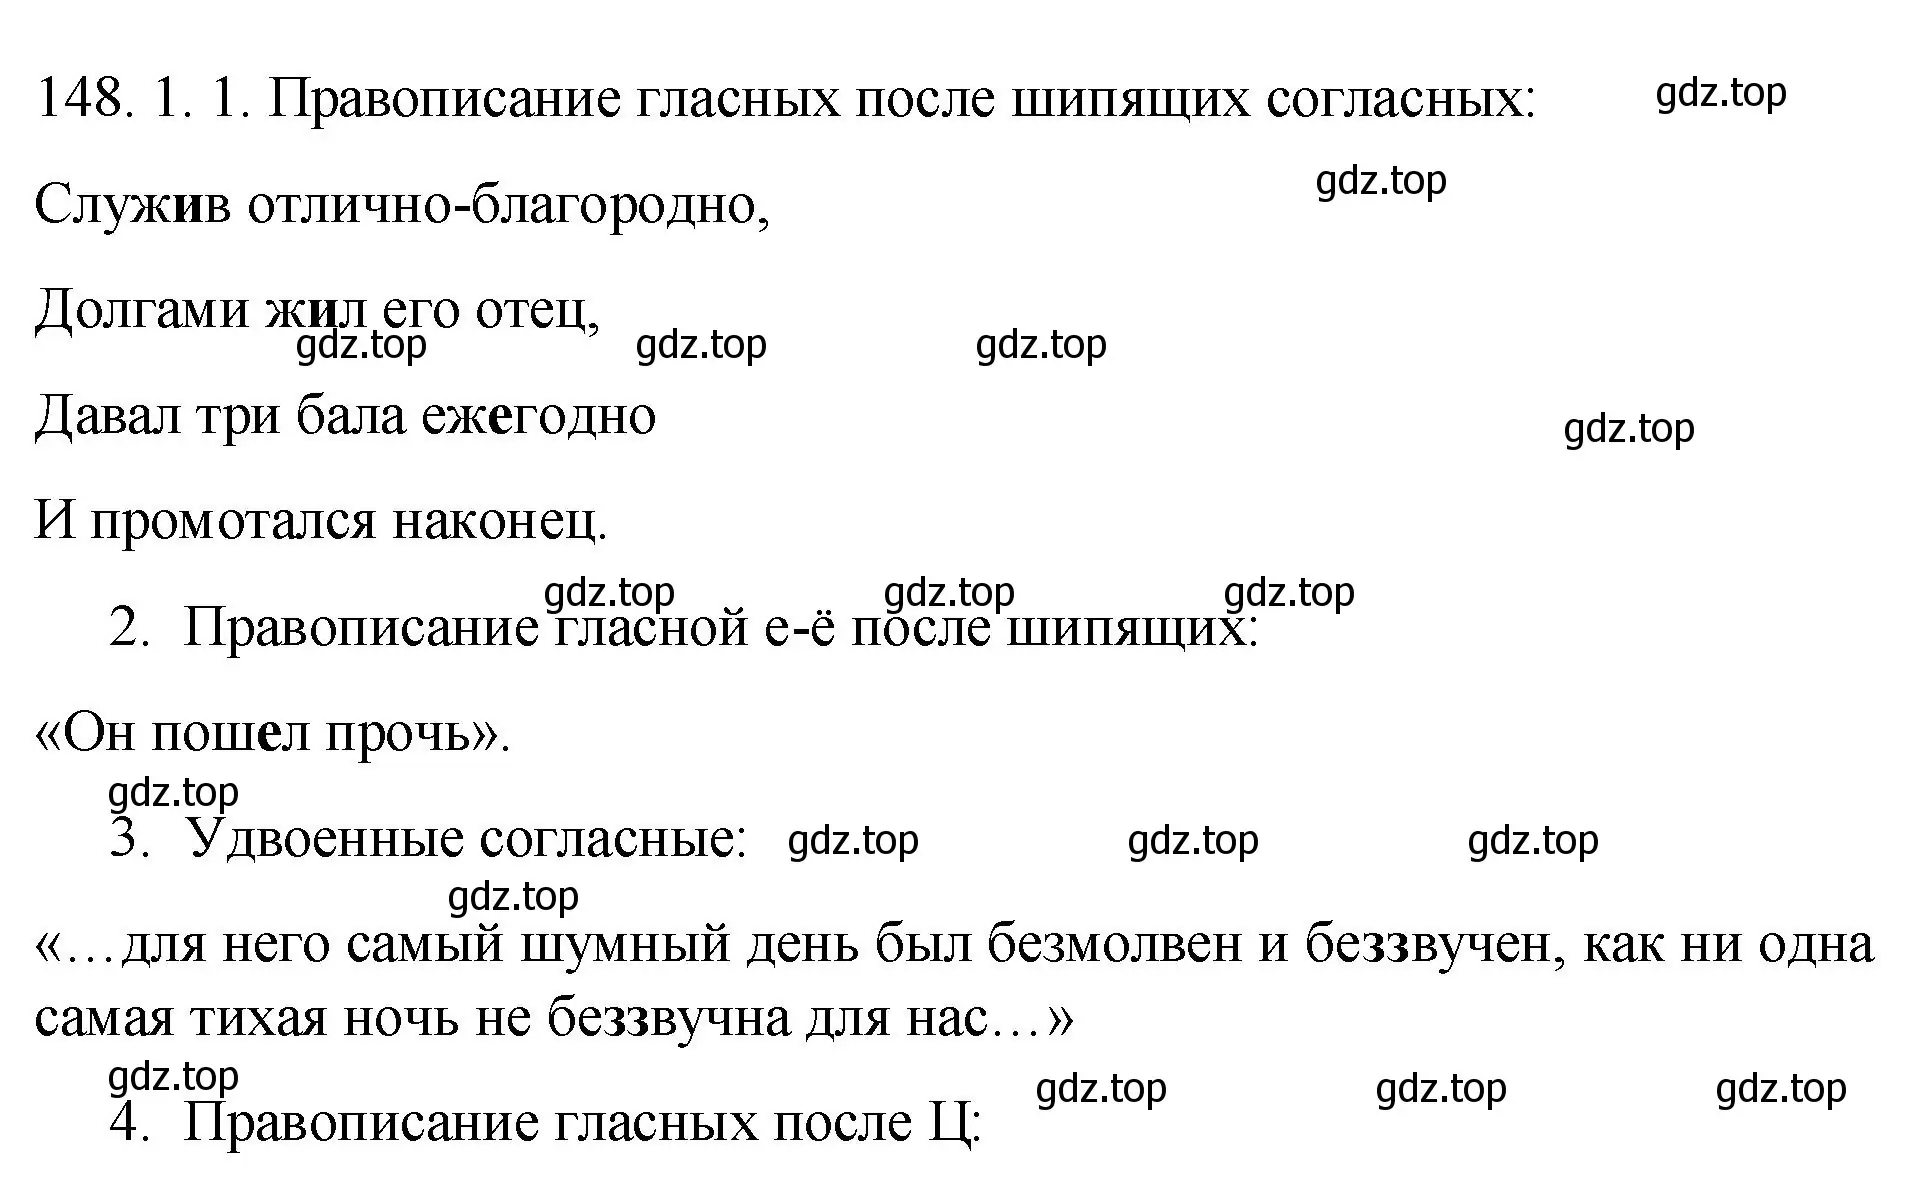 Решение номер 148 (страница 136) гдз по русскому языку 10-11 класс Гольцова, Шамшин, учебник 1 часть